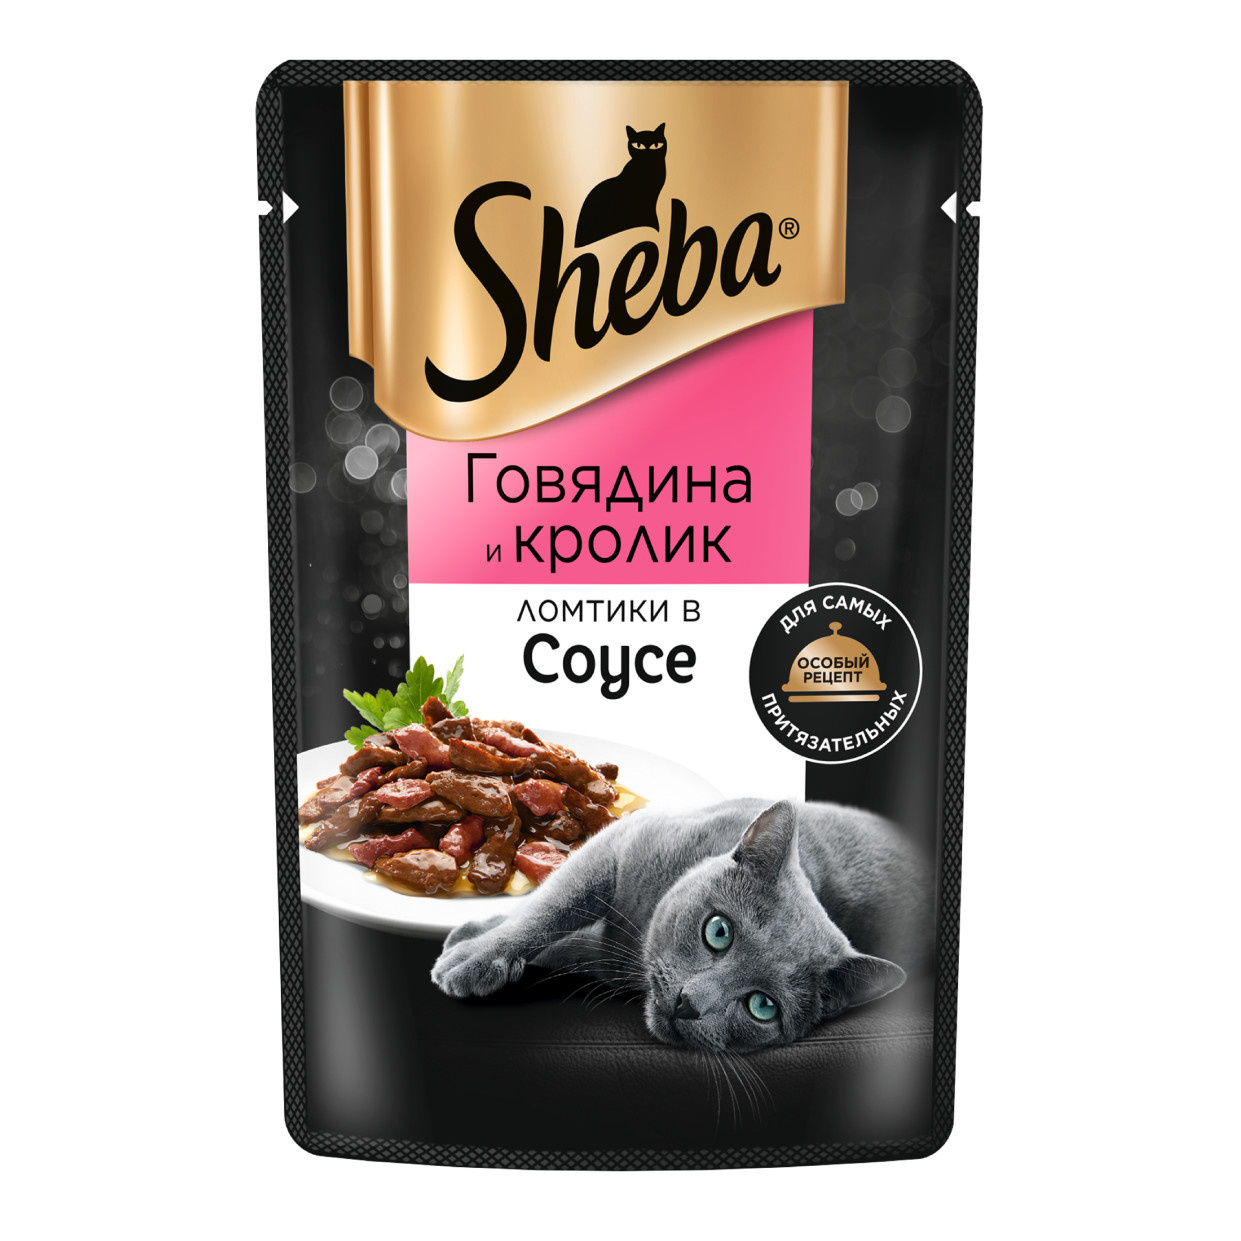 Sheba влажный корм для кошек «Ломтики в соусе с говядиной и кроликом» (75 г)